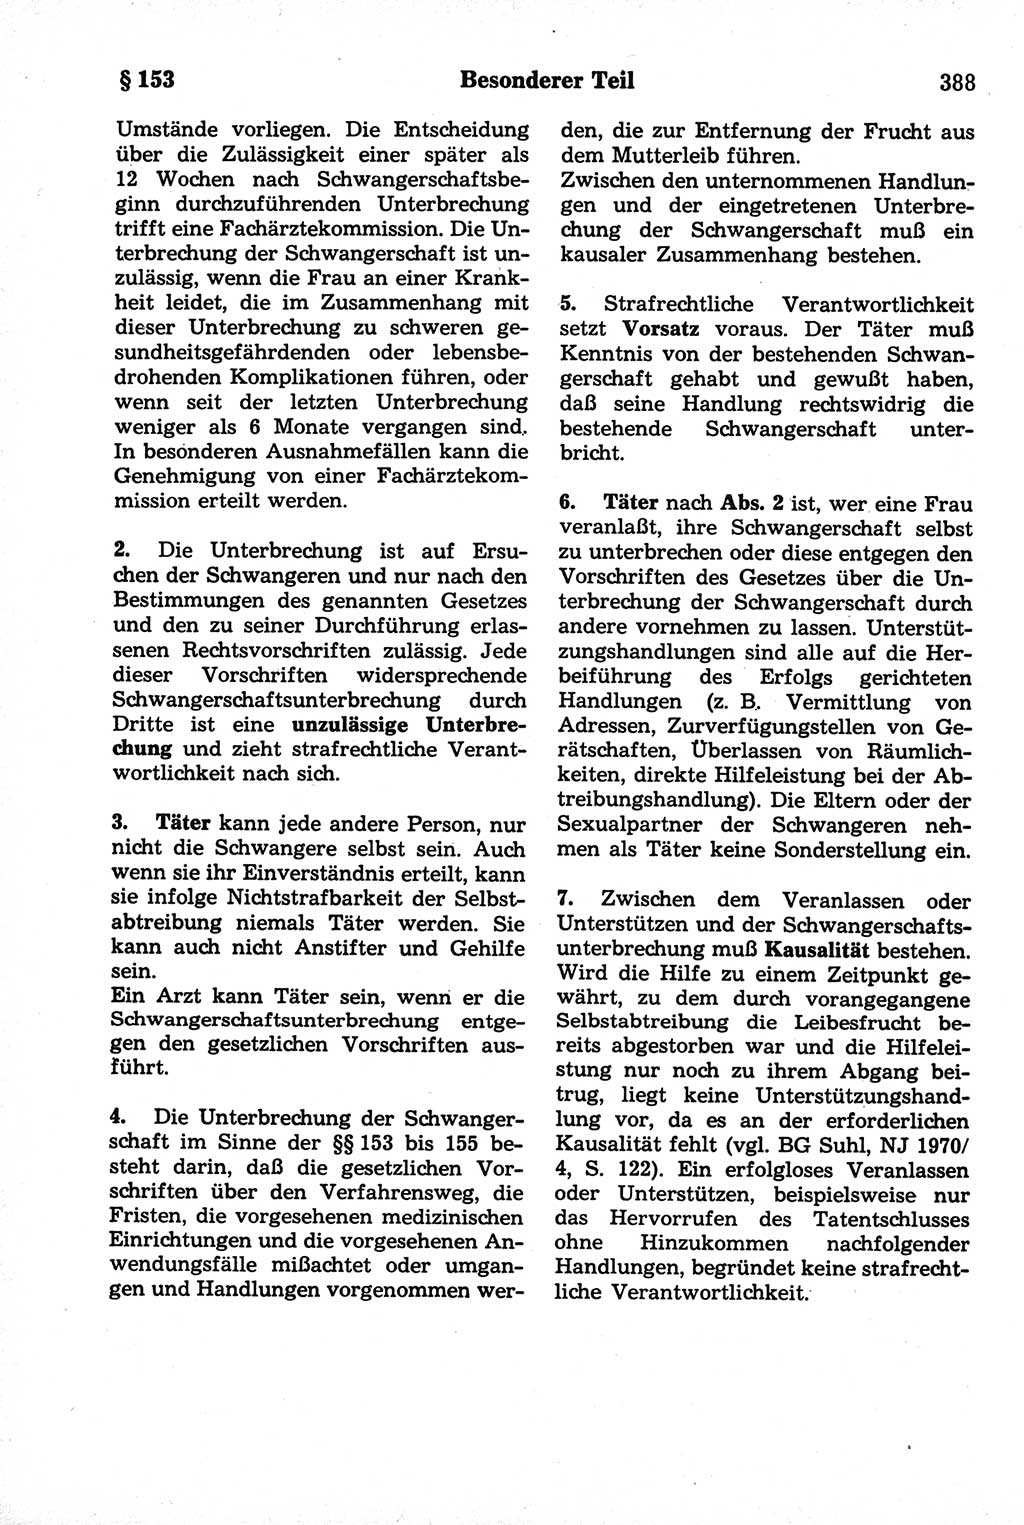 Strafrecht der Deutschen Demokratischen Republik (DDR), Kommentar zum Strafgesetzbuch (StGB) 1981, Seite 388 (Strafr. DDR Komm. StGB 1981, S. 388)